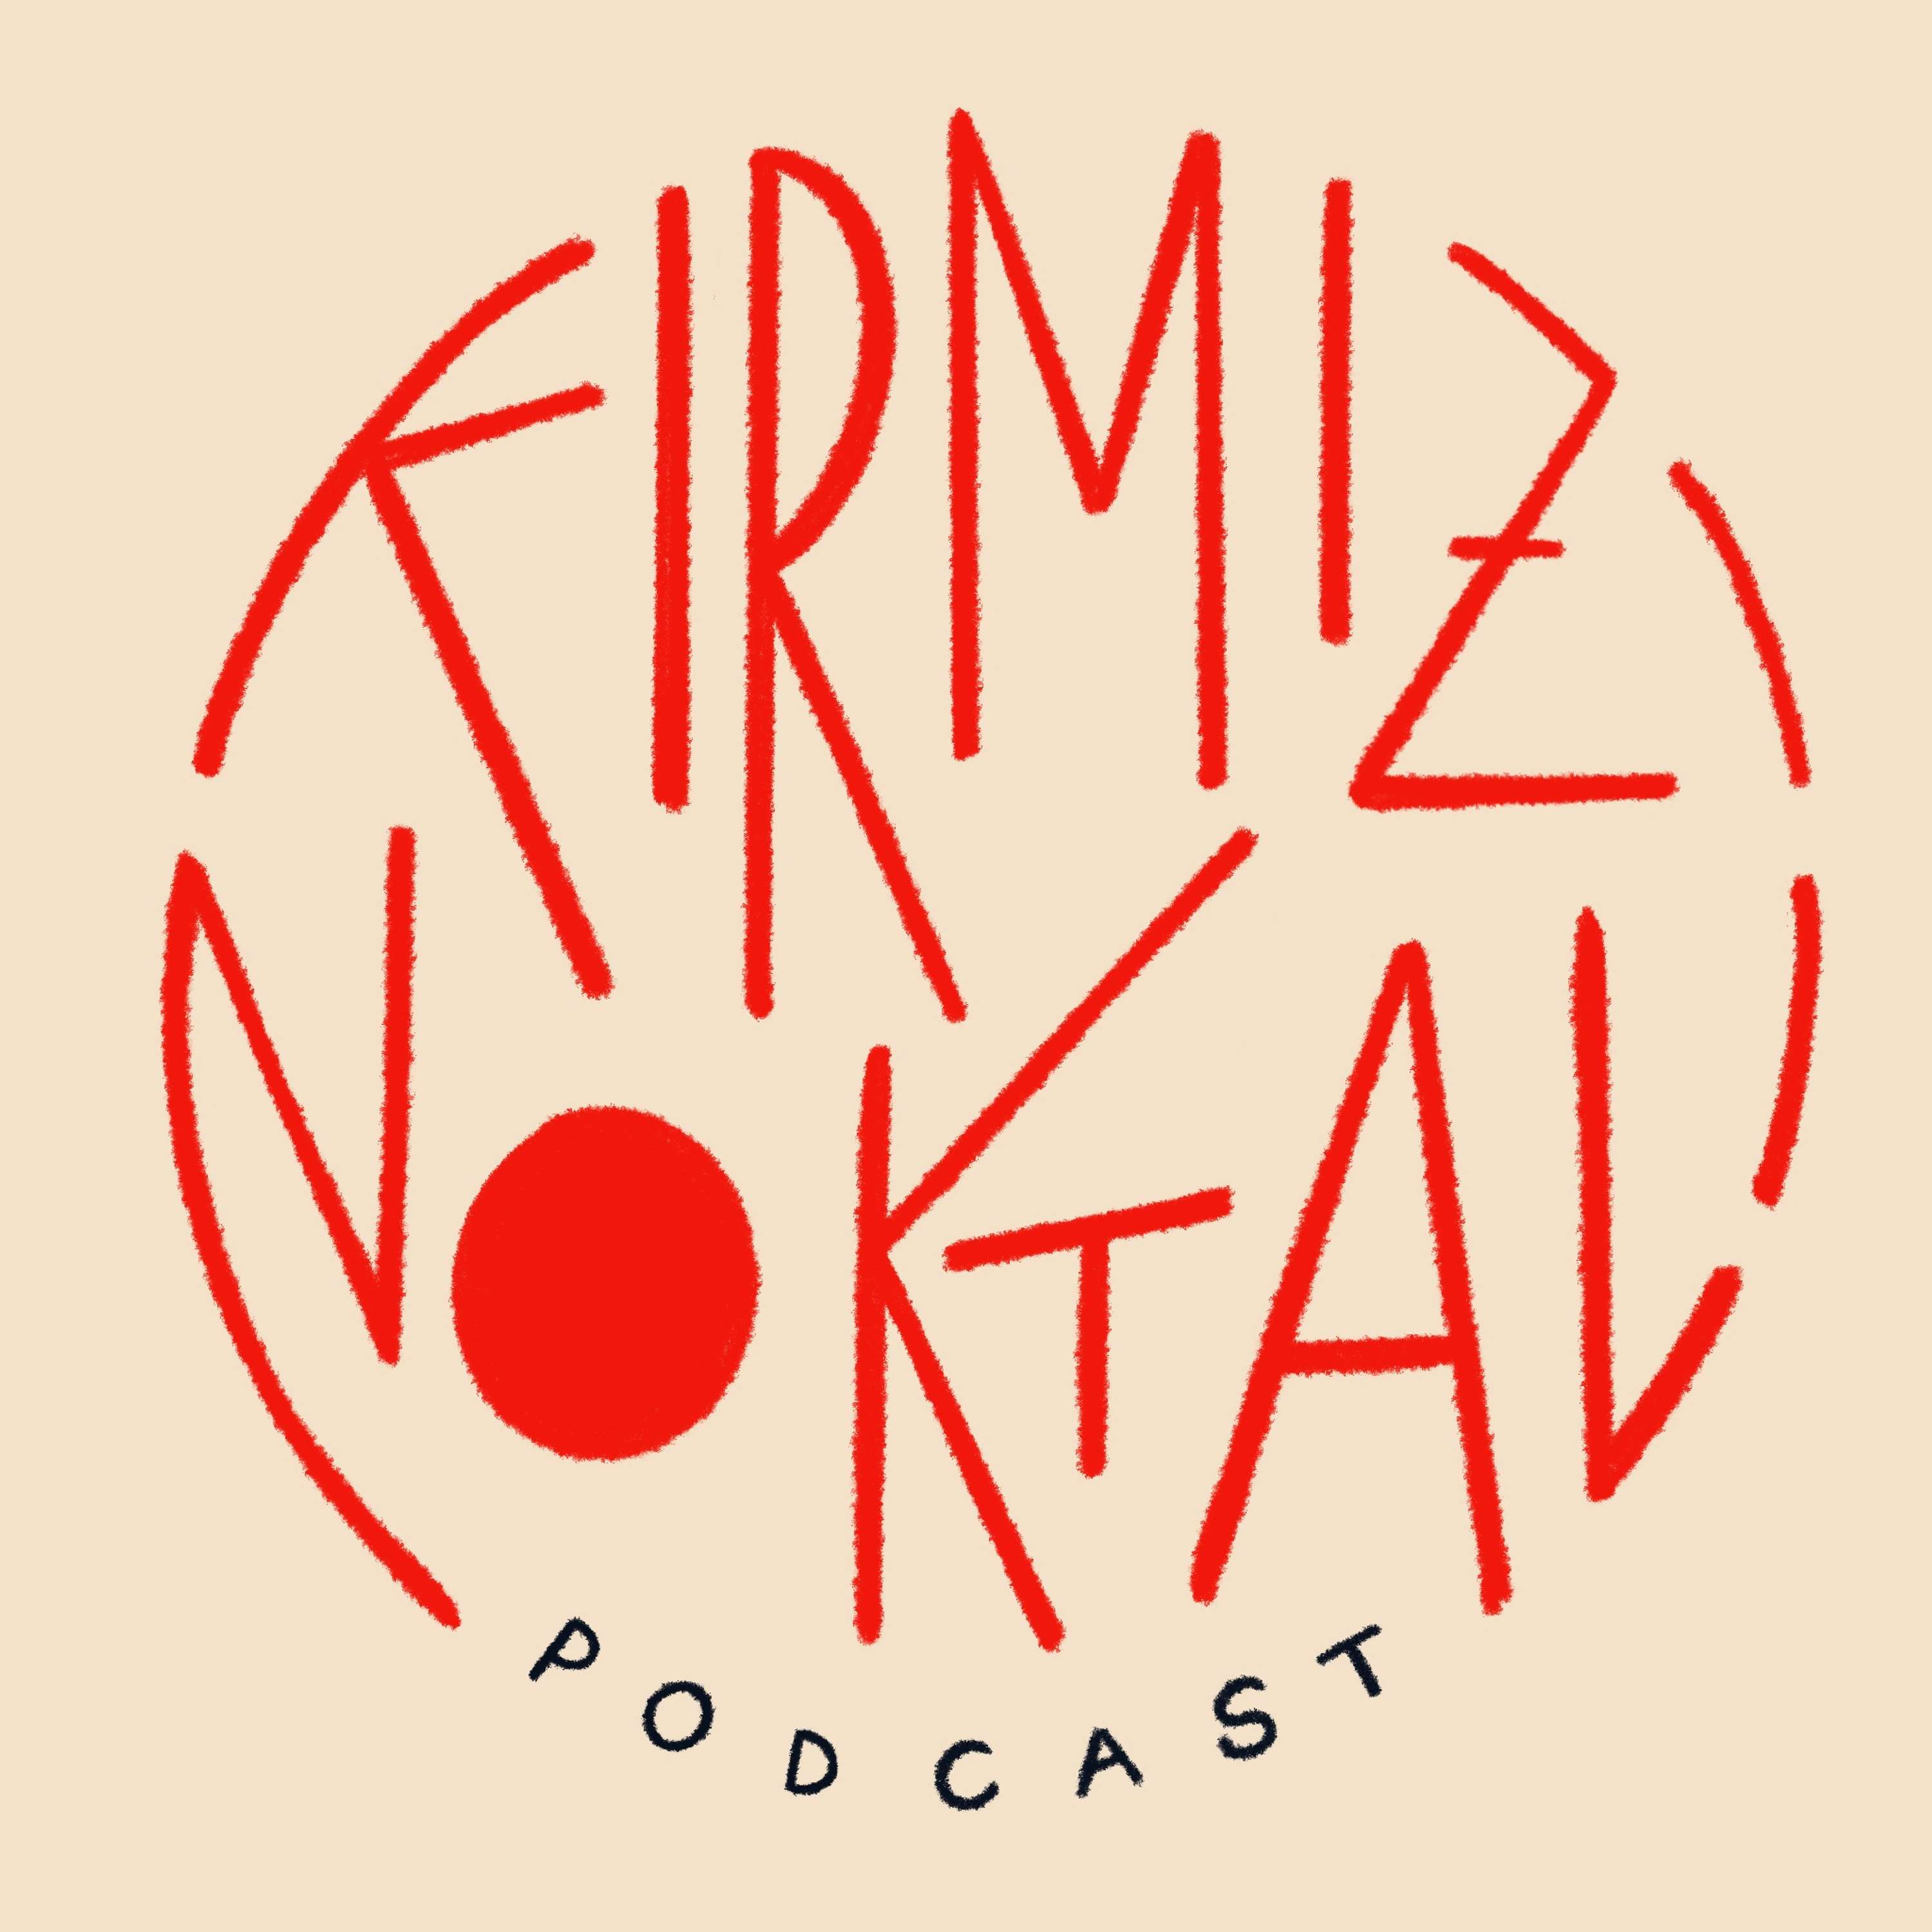 Krmz Noktal Podcast